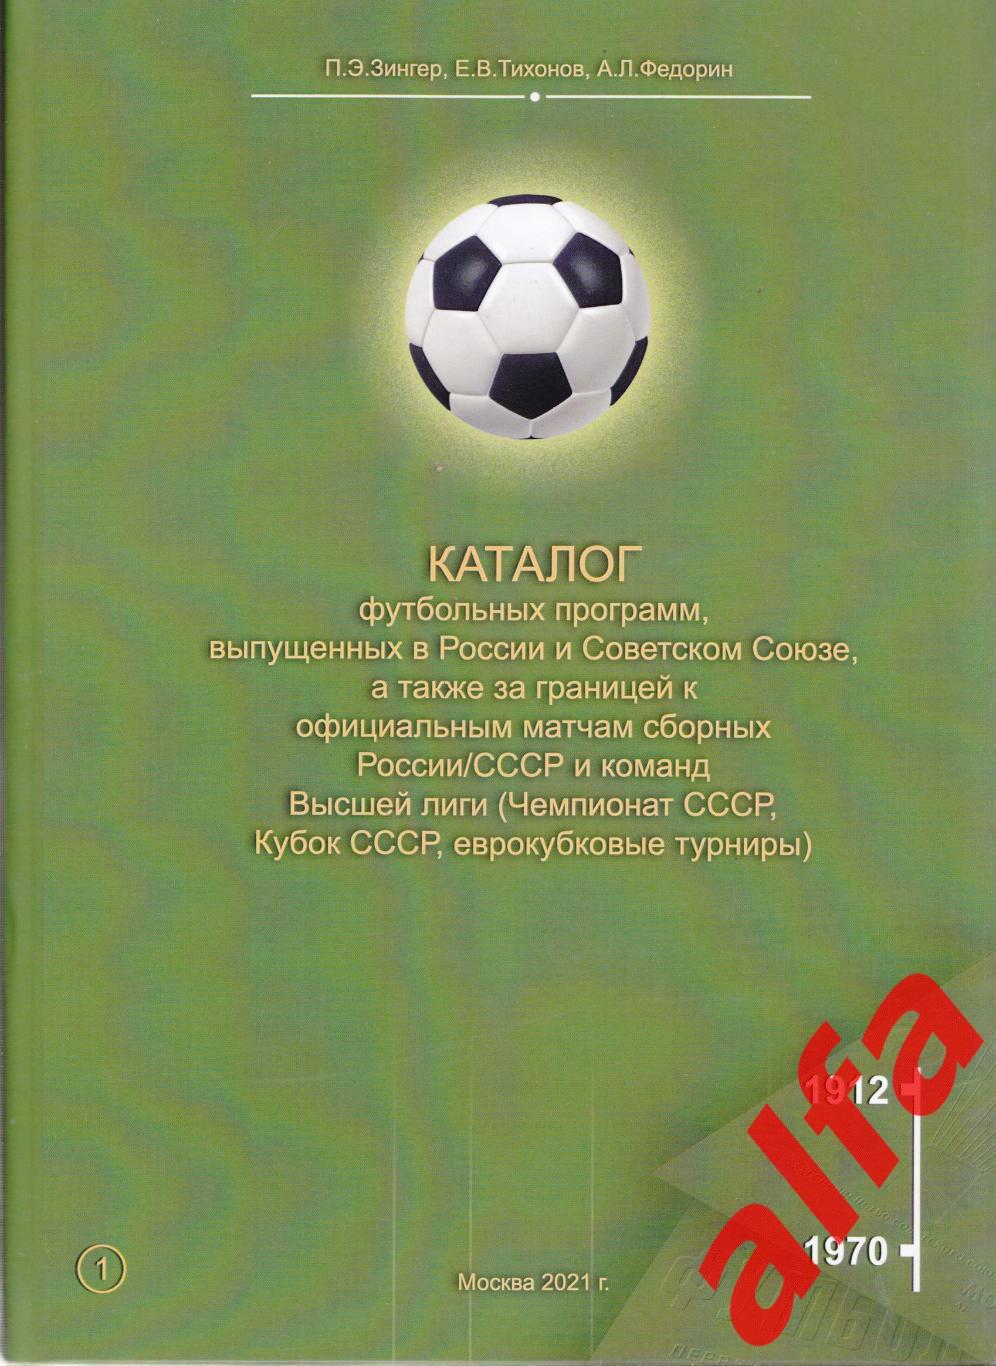 Каталог футбольных программ (Россия-СССР). Т.1-2 1912-1991